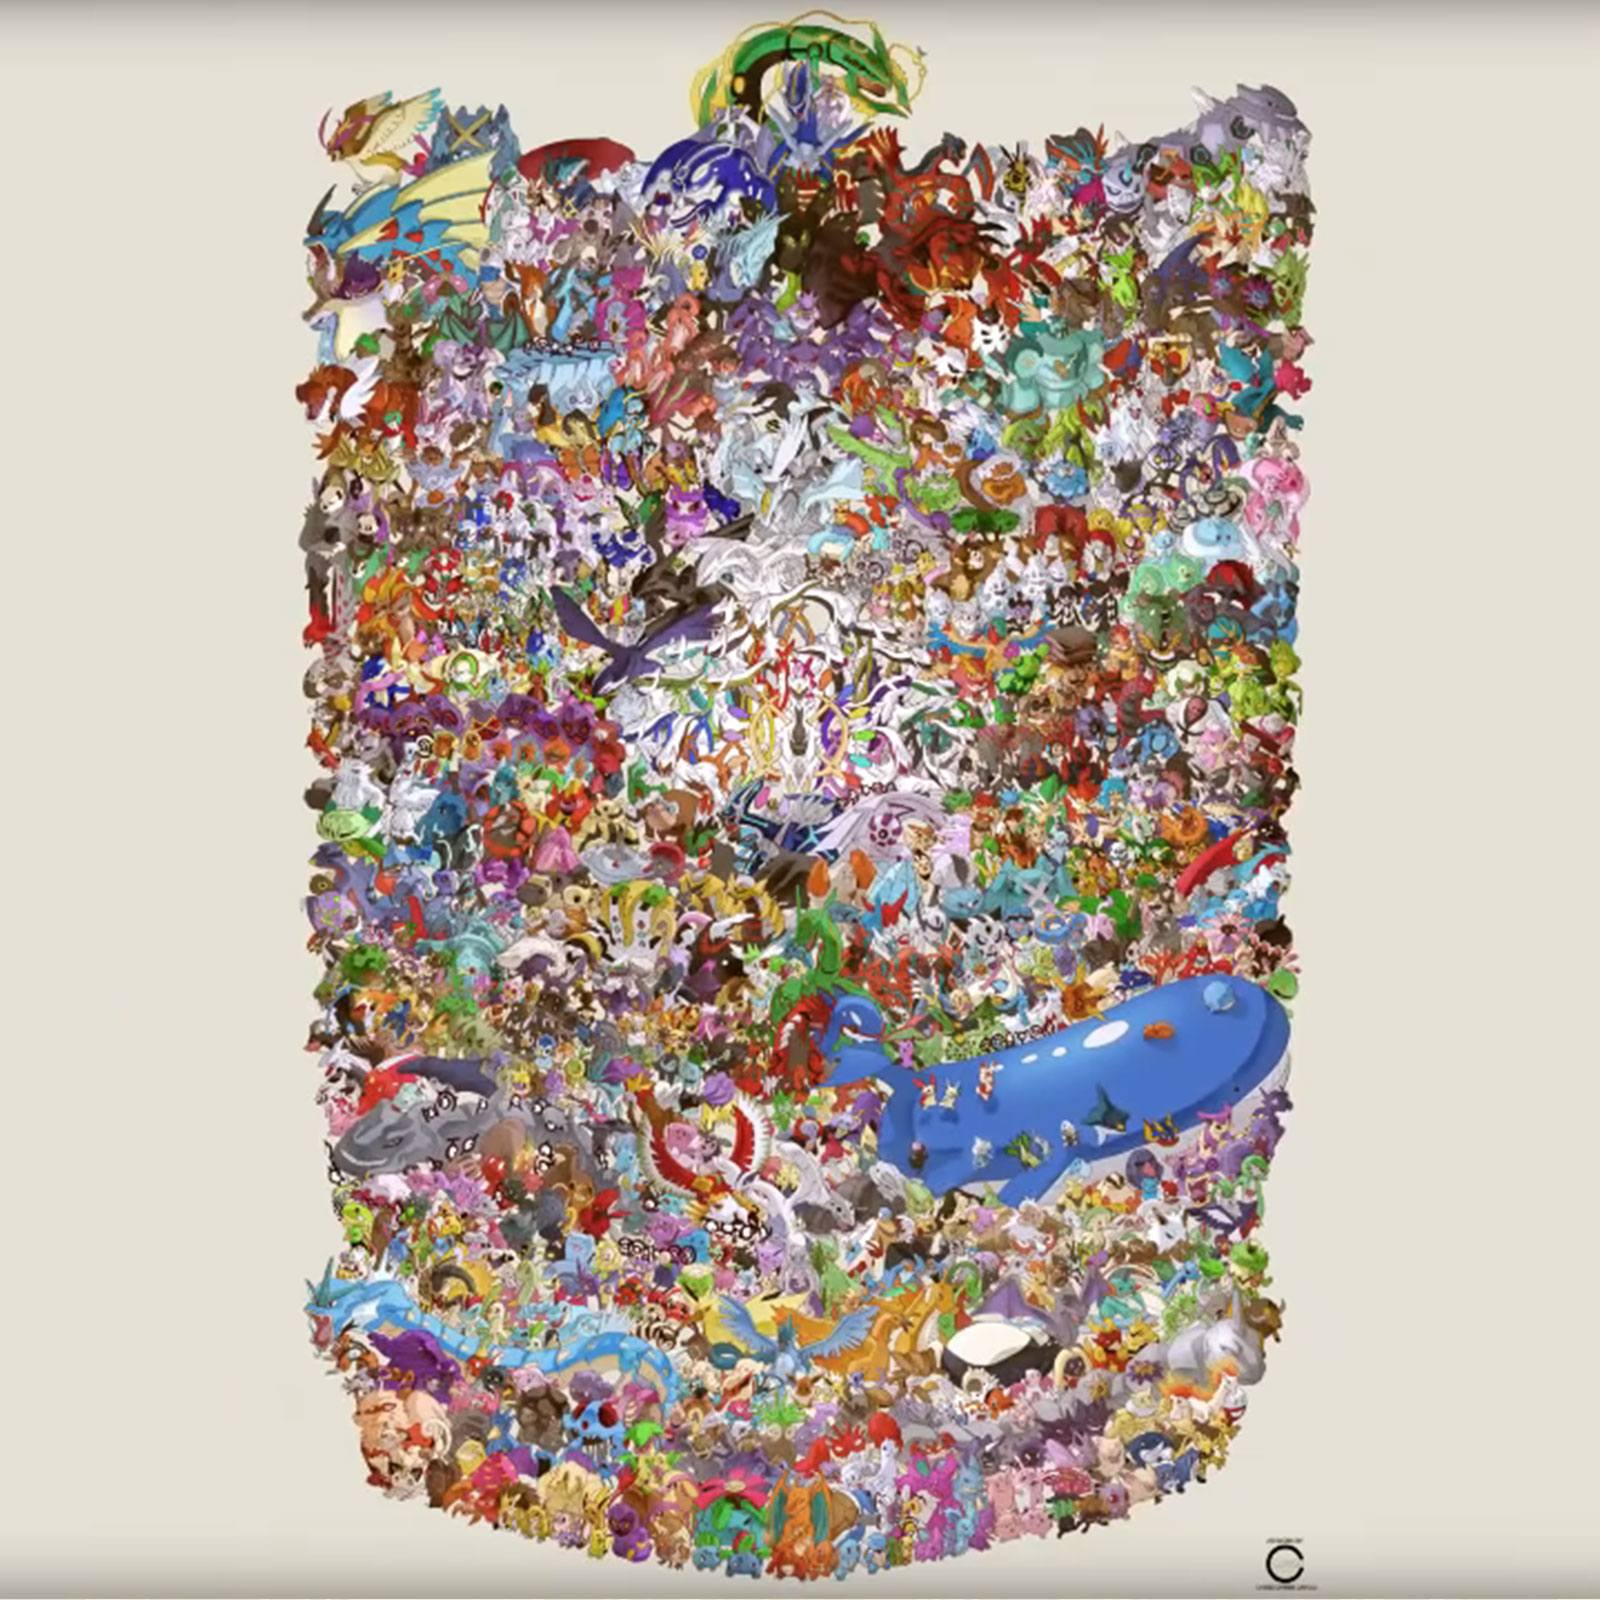 L'artiste Ccayco dessine près de 1200 Pokémon